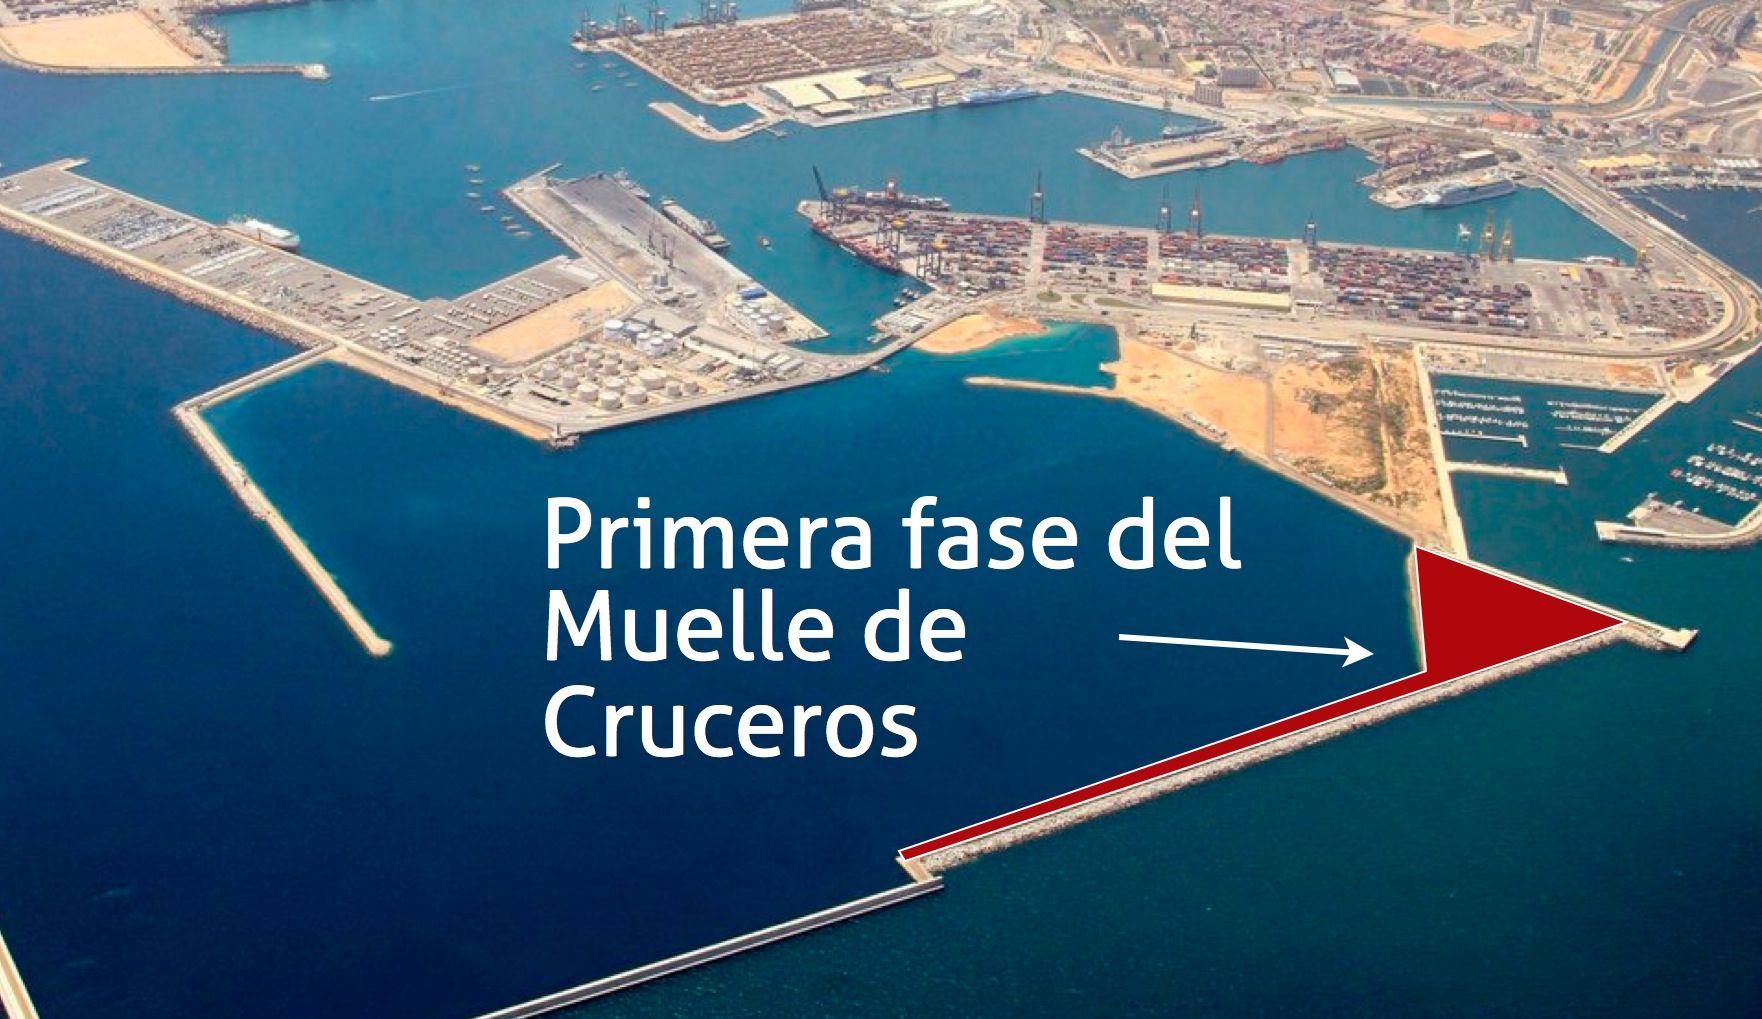 Primera fase del Muelle de Cruceros del Puerto de Valencia